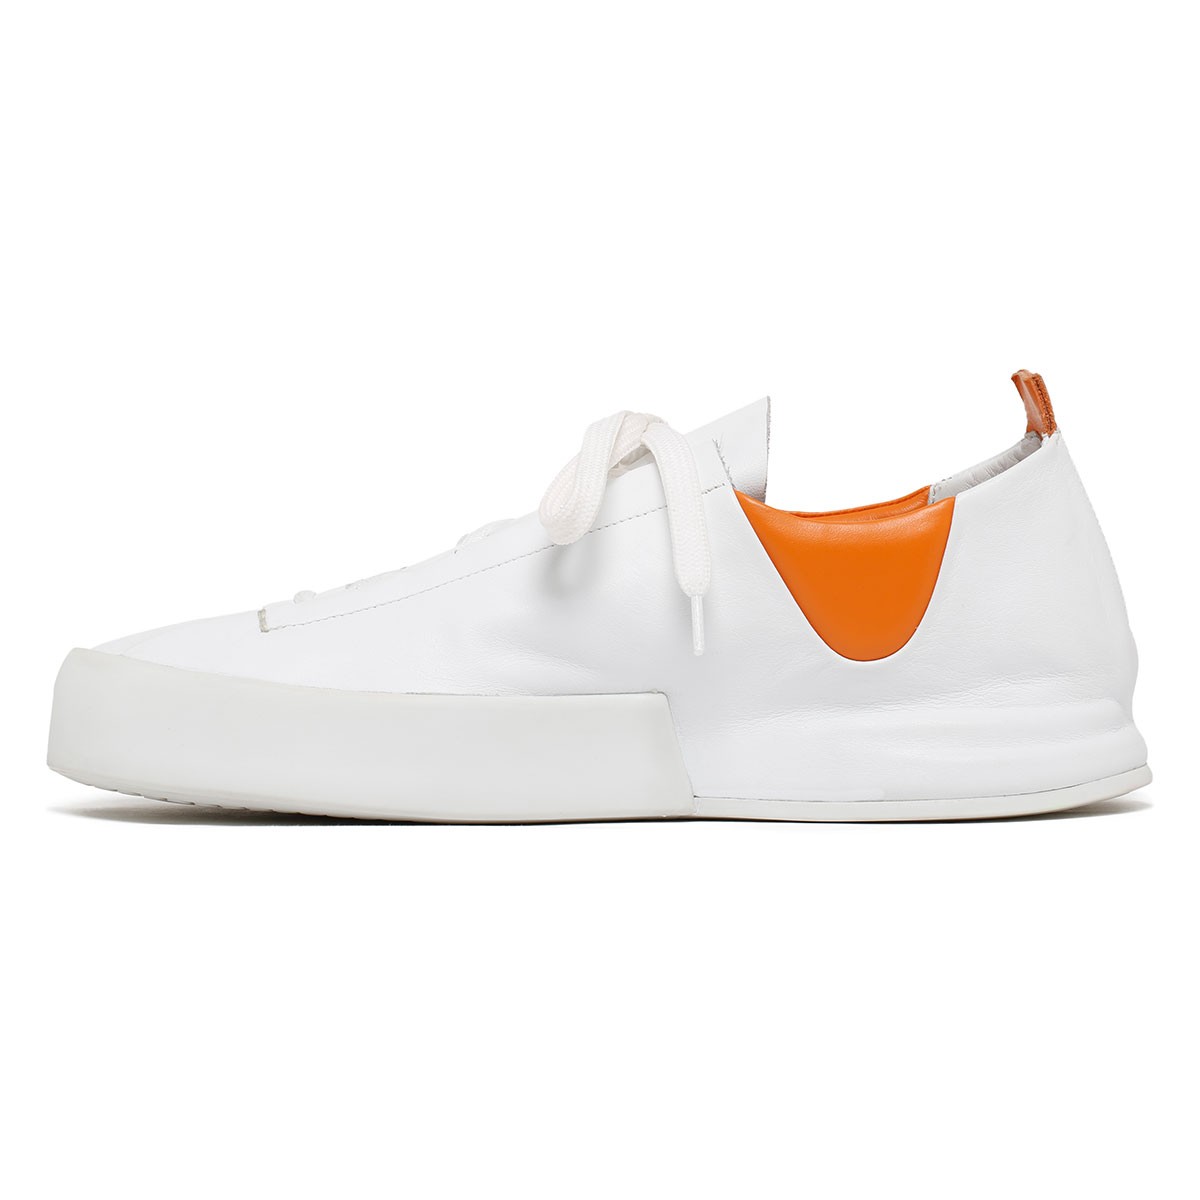 Incerti white and orange sneakers